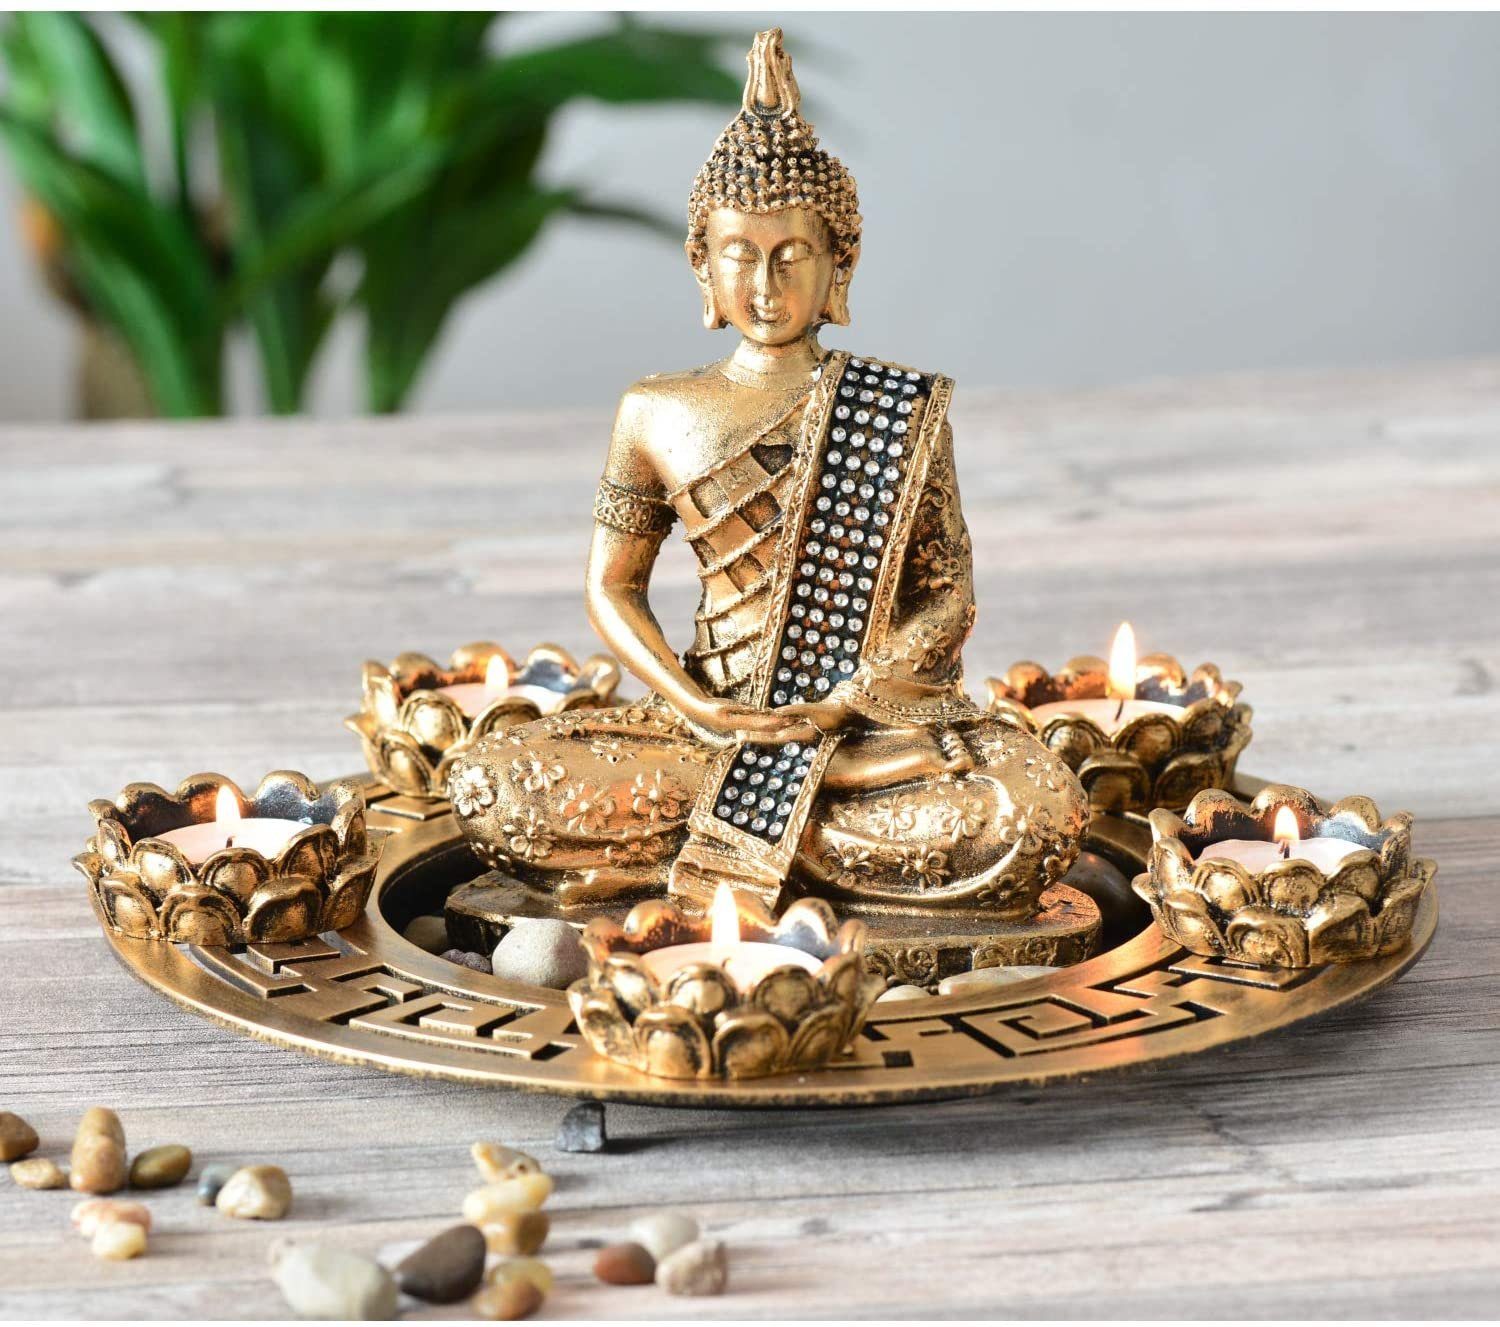 INtrenDU Buddhafigur Buddha Figur mit Teelichthaltern Dekoteller und Dekosteinen